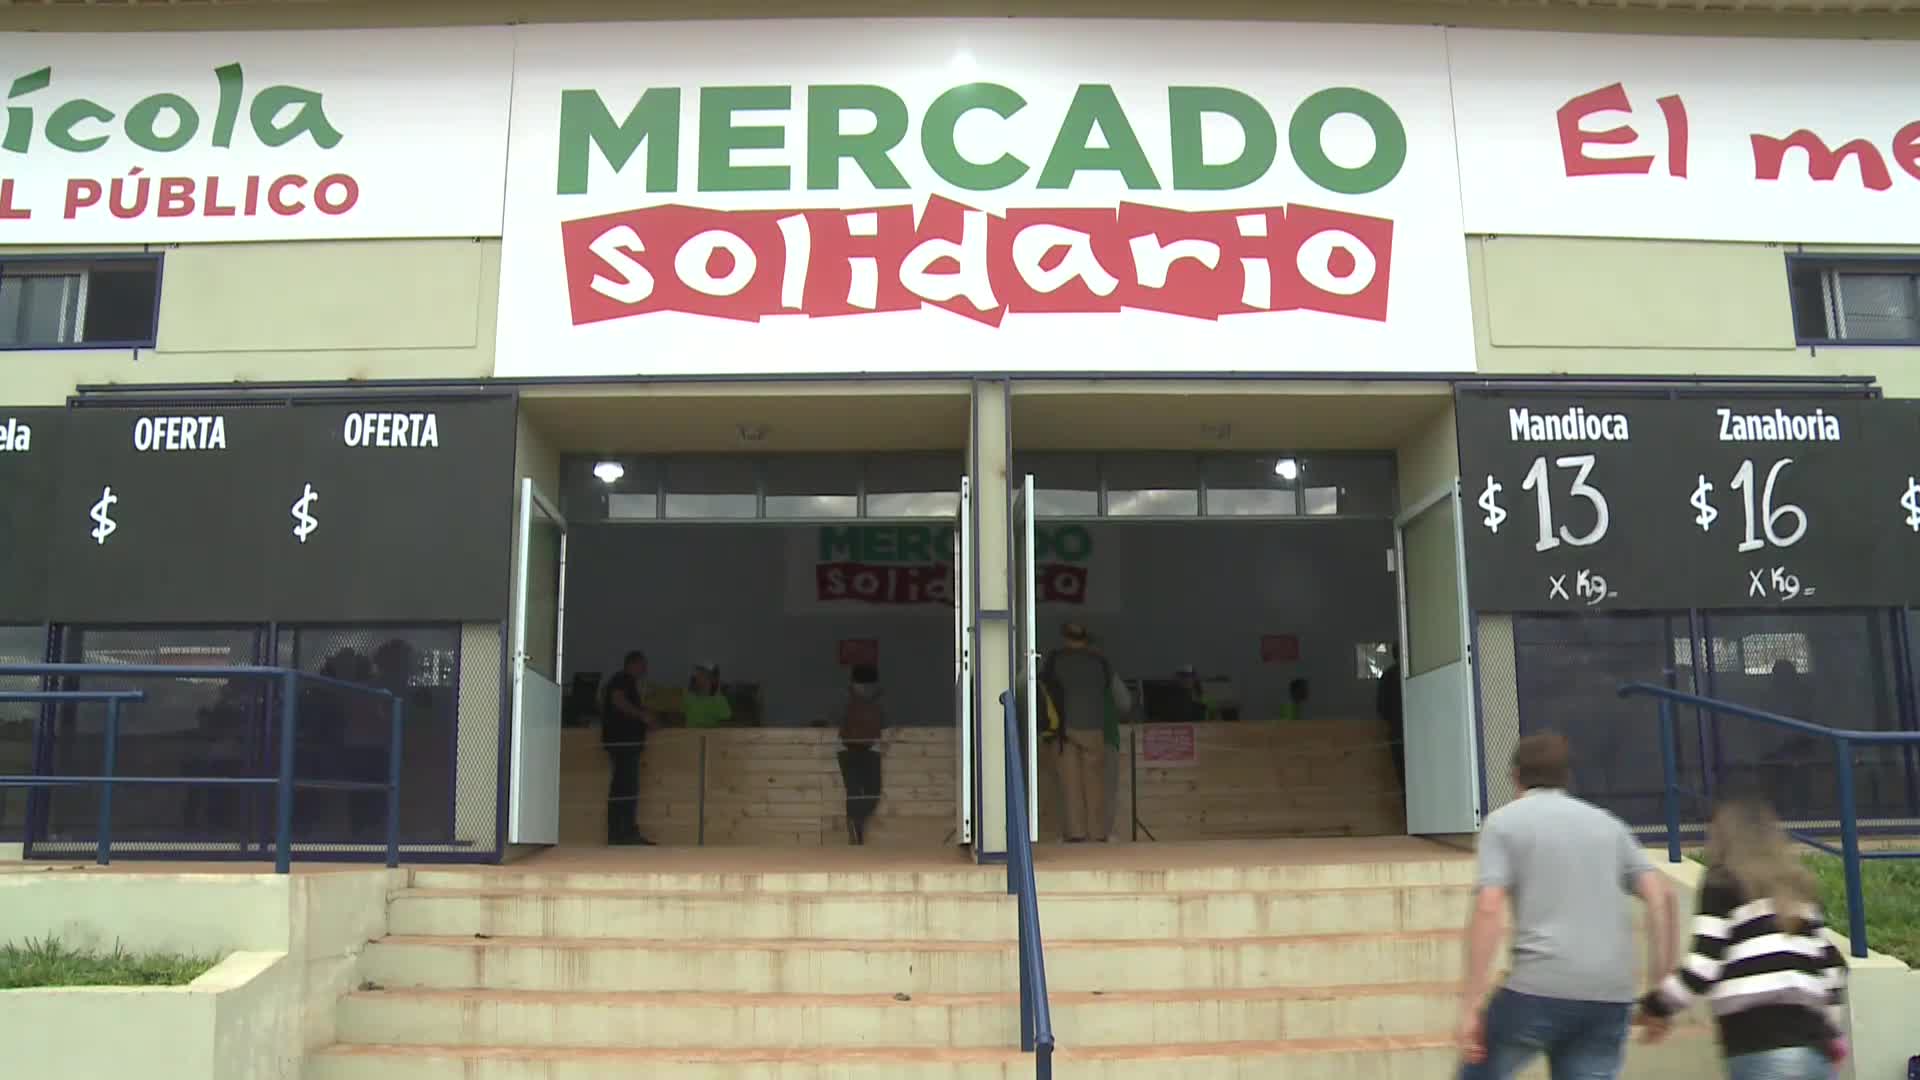 Posadas: el “mercado solidario” vende fruta y verduras al peso en el Mercado Central